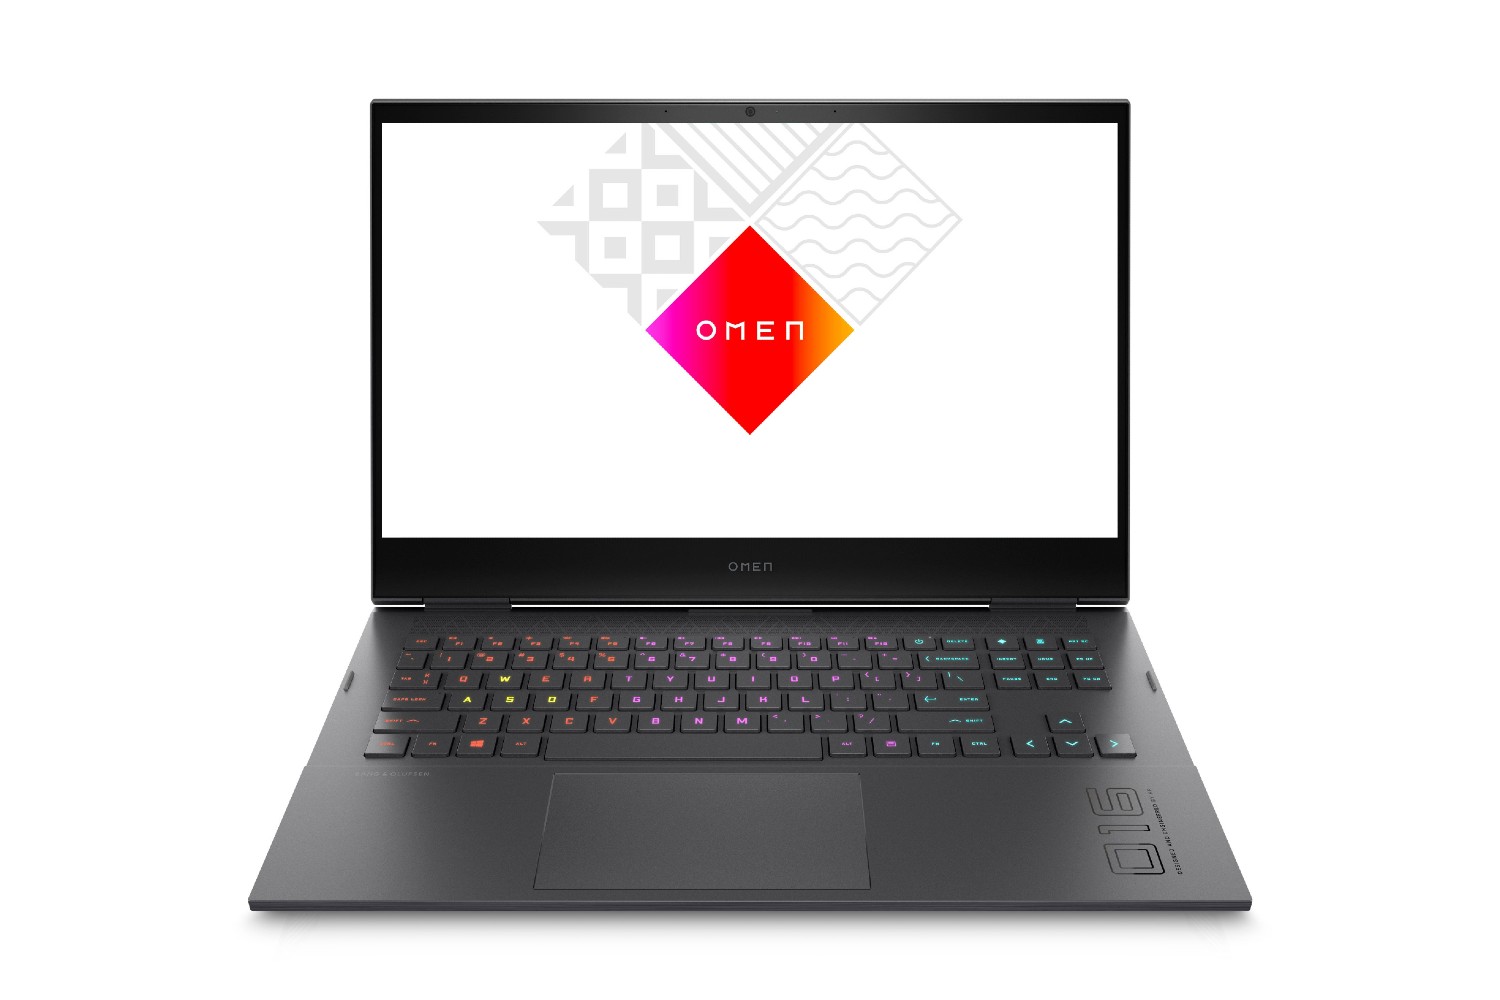 Il laptop da gaming HP Omen 16.1 pollici con il logo Omen sullo schermo.